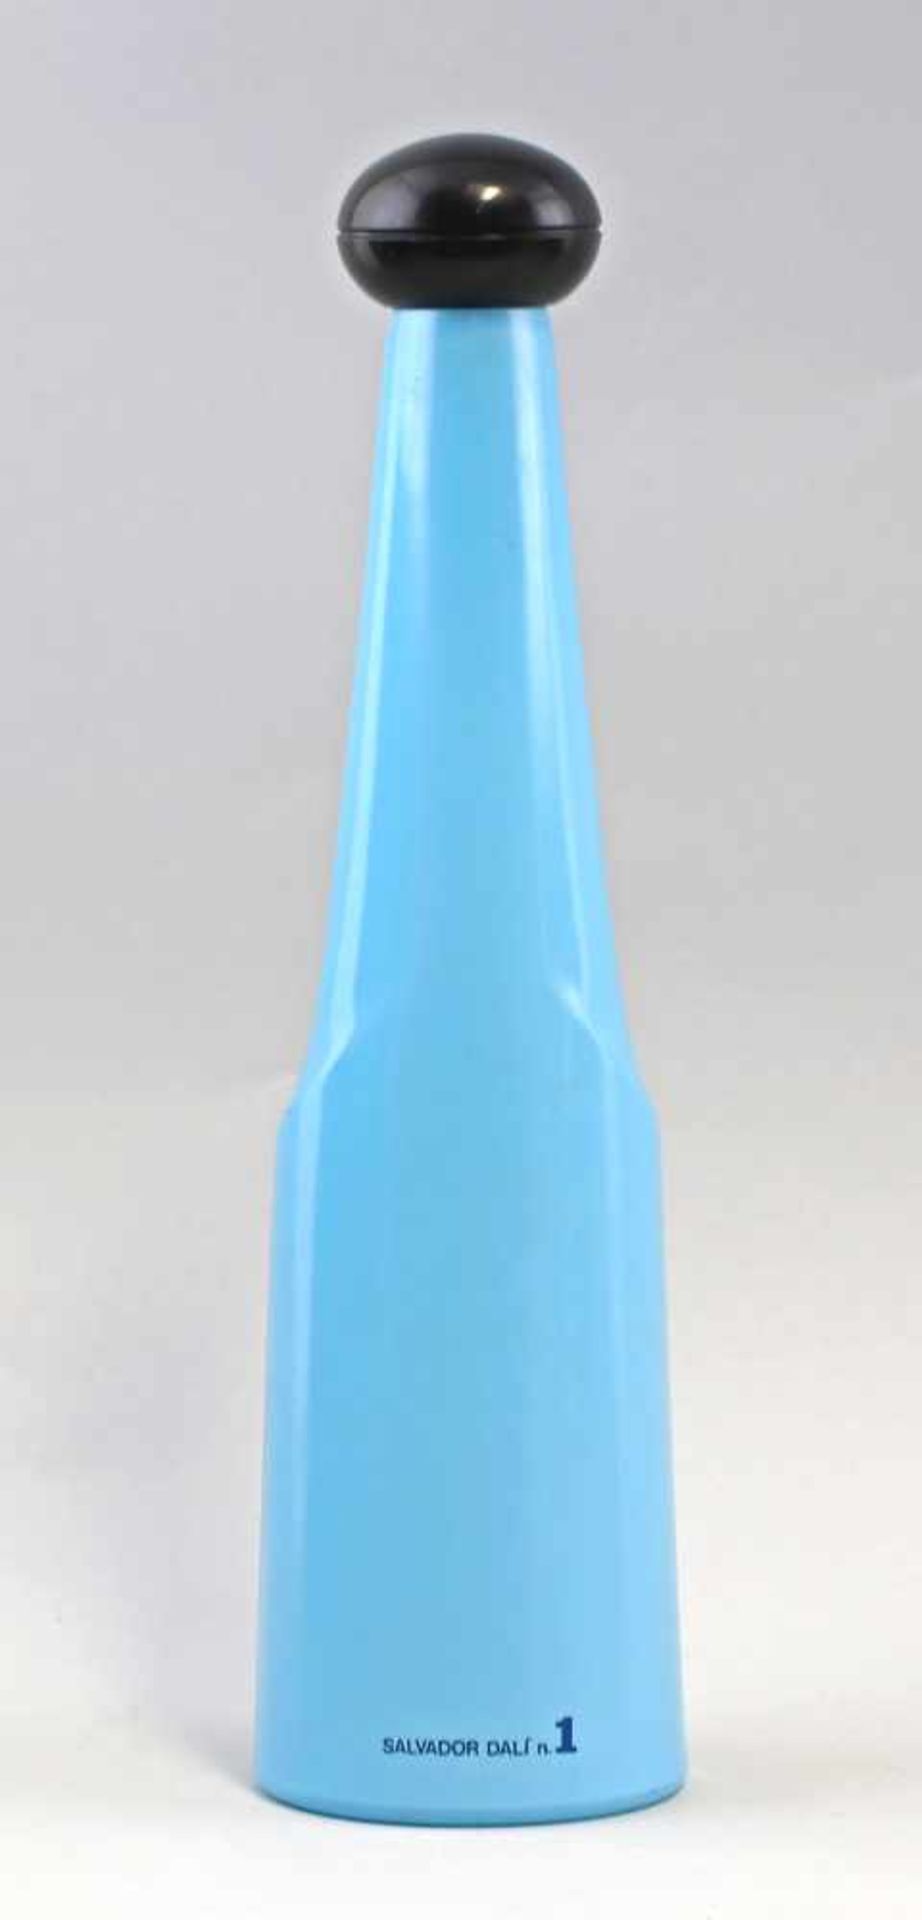 Salvador Dali, Weinflasche Nr. 1Salvador Dali, Weinflasche Nr. 1, Sonderauflage für Rosso Antico, - Image 3 of 3